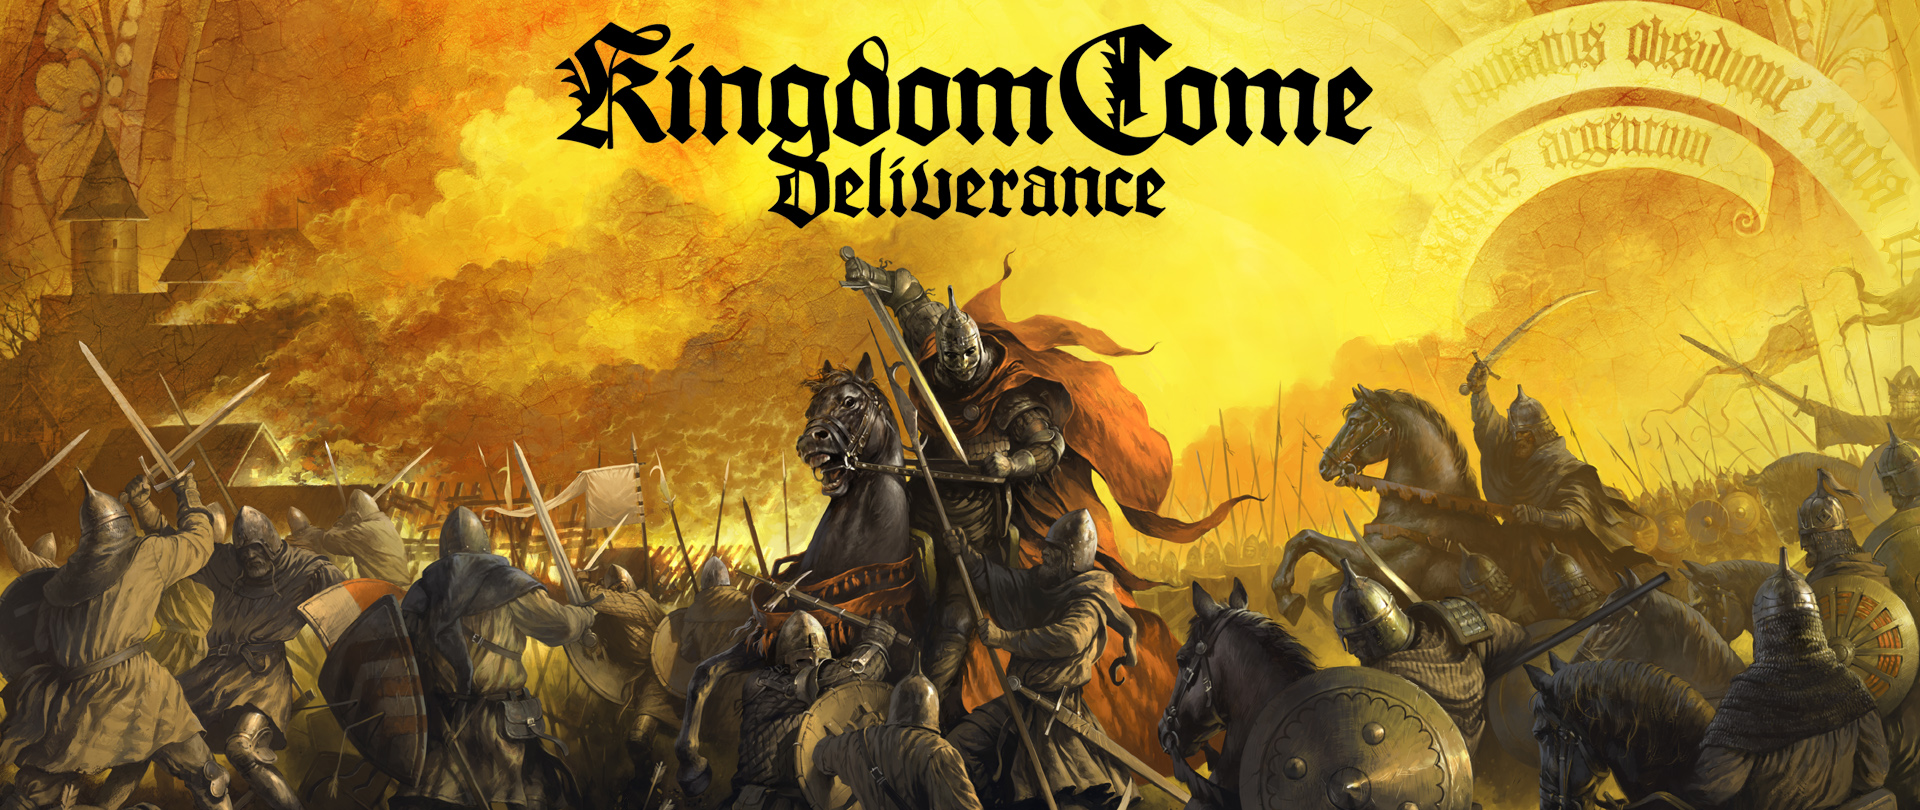 Kingdom Come Deliverance için Hardcore modu çıktı